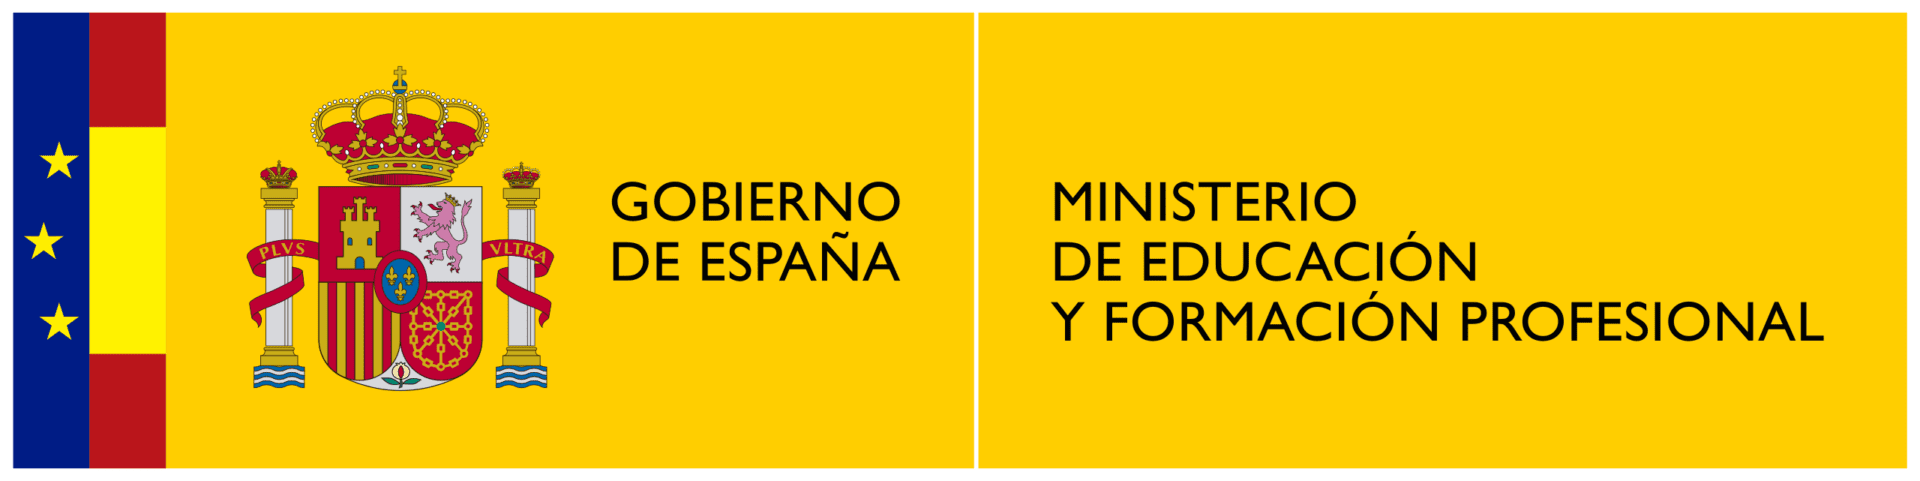 2560px-Logotipo_del_Ministerio_de_Educación_y_Formación_Profesional.svg (1)